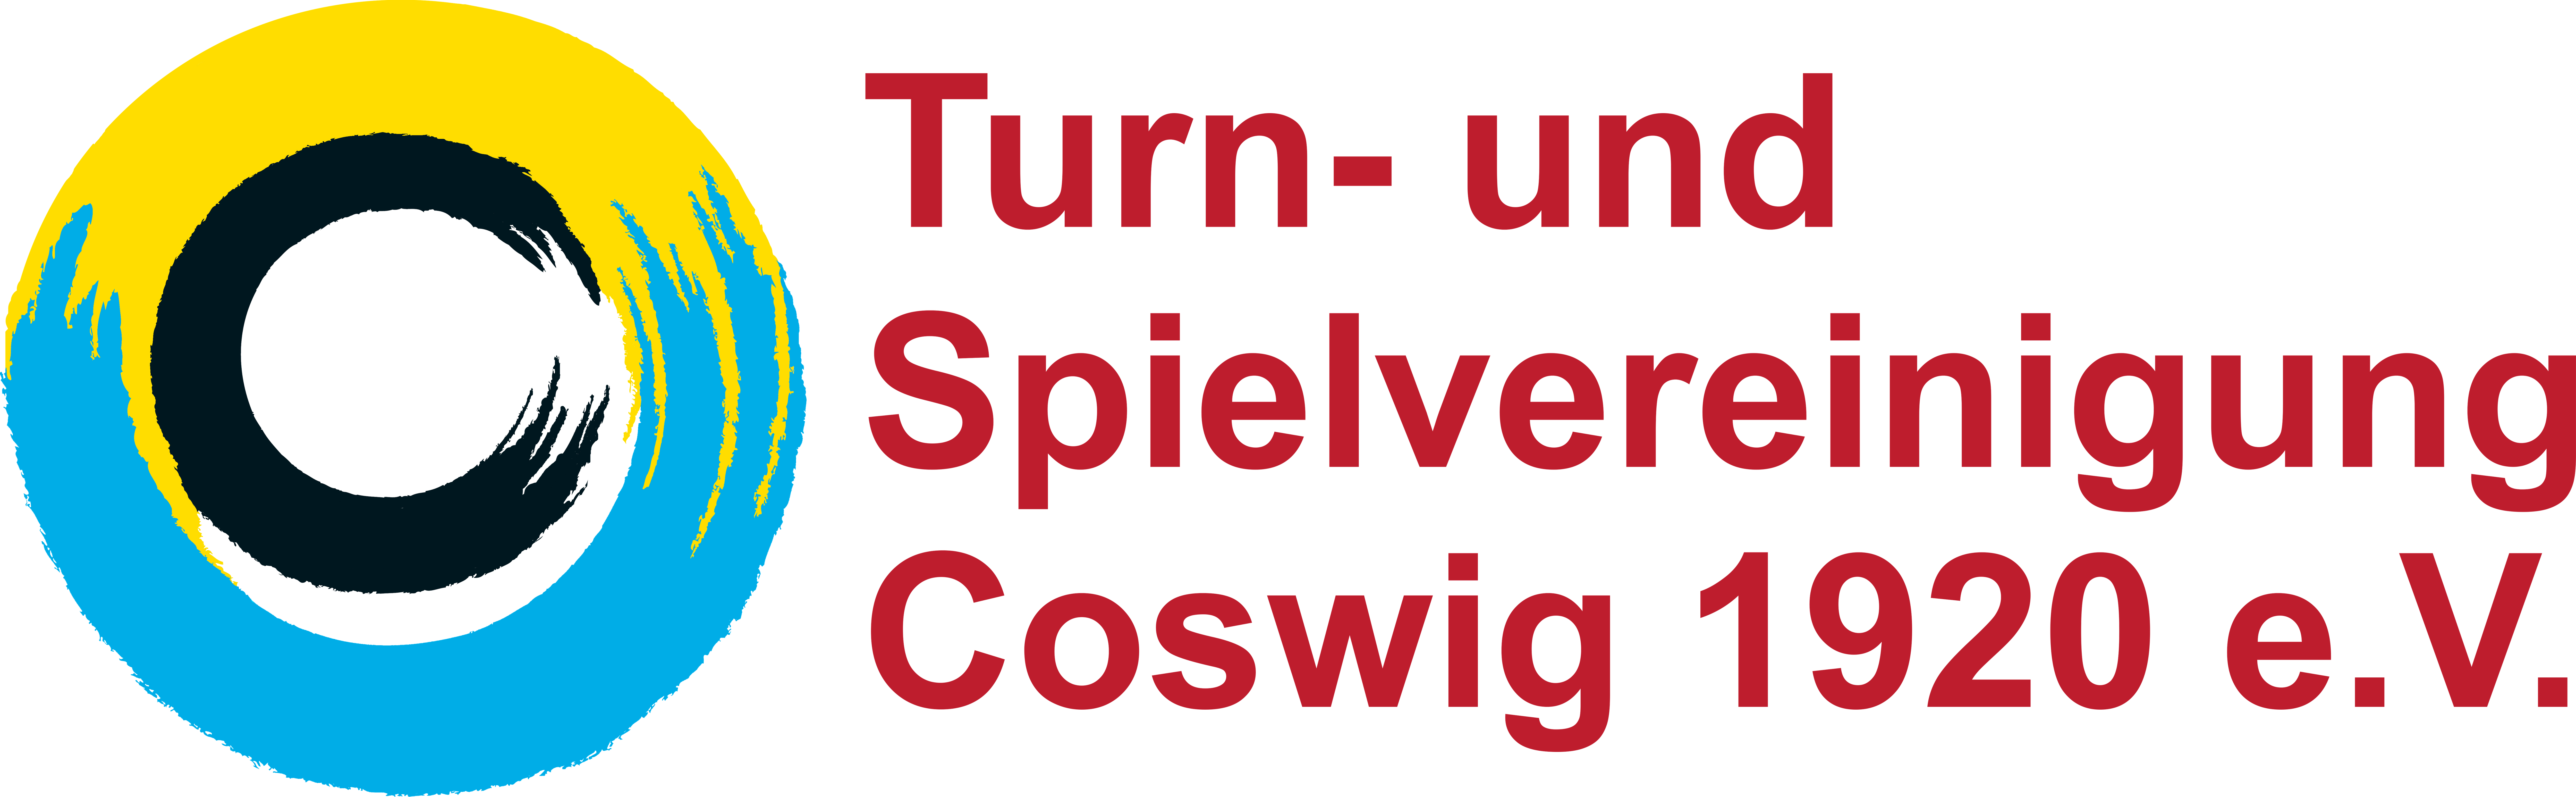 Turn- und Spielvereinigung Coswig 1920 e.V.